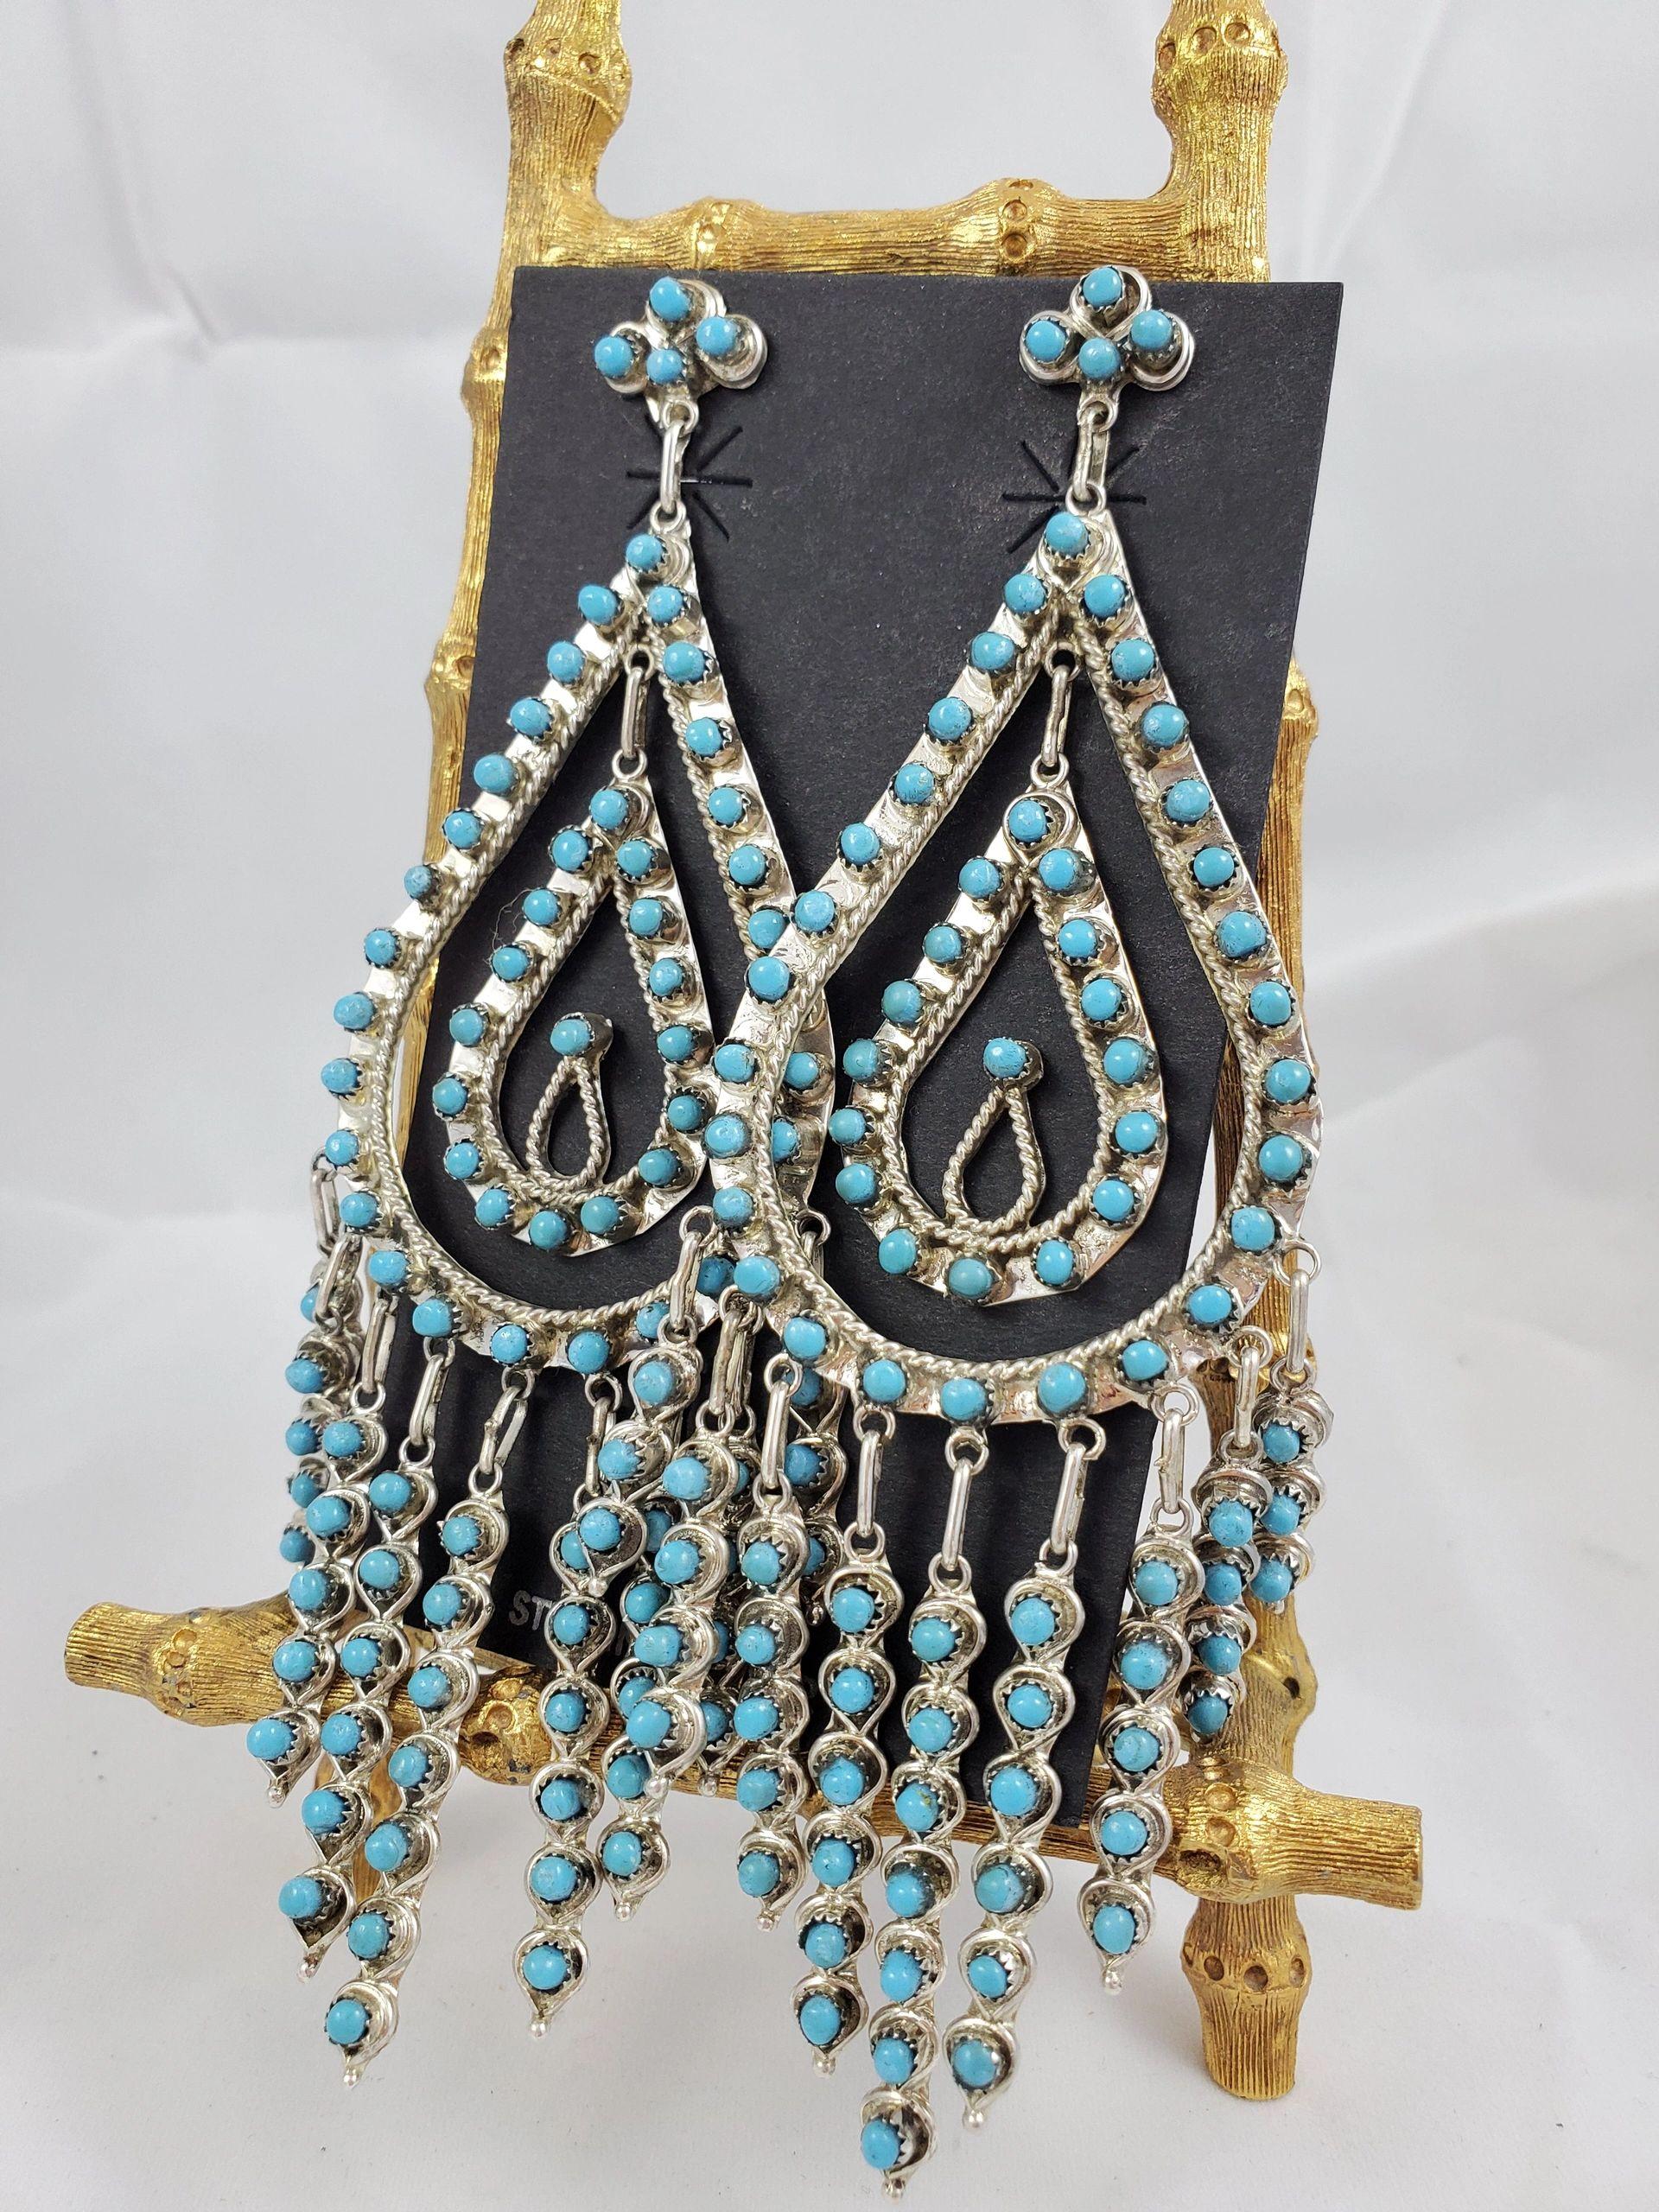 Dbl teardrop chandelier earrings - Albuquerque Pawn Shop